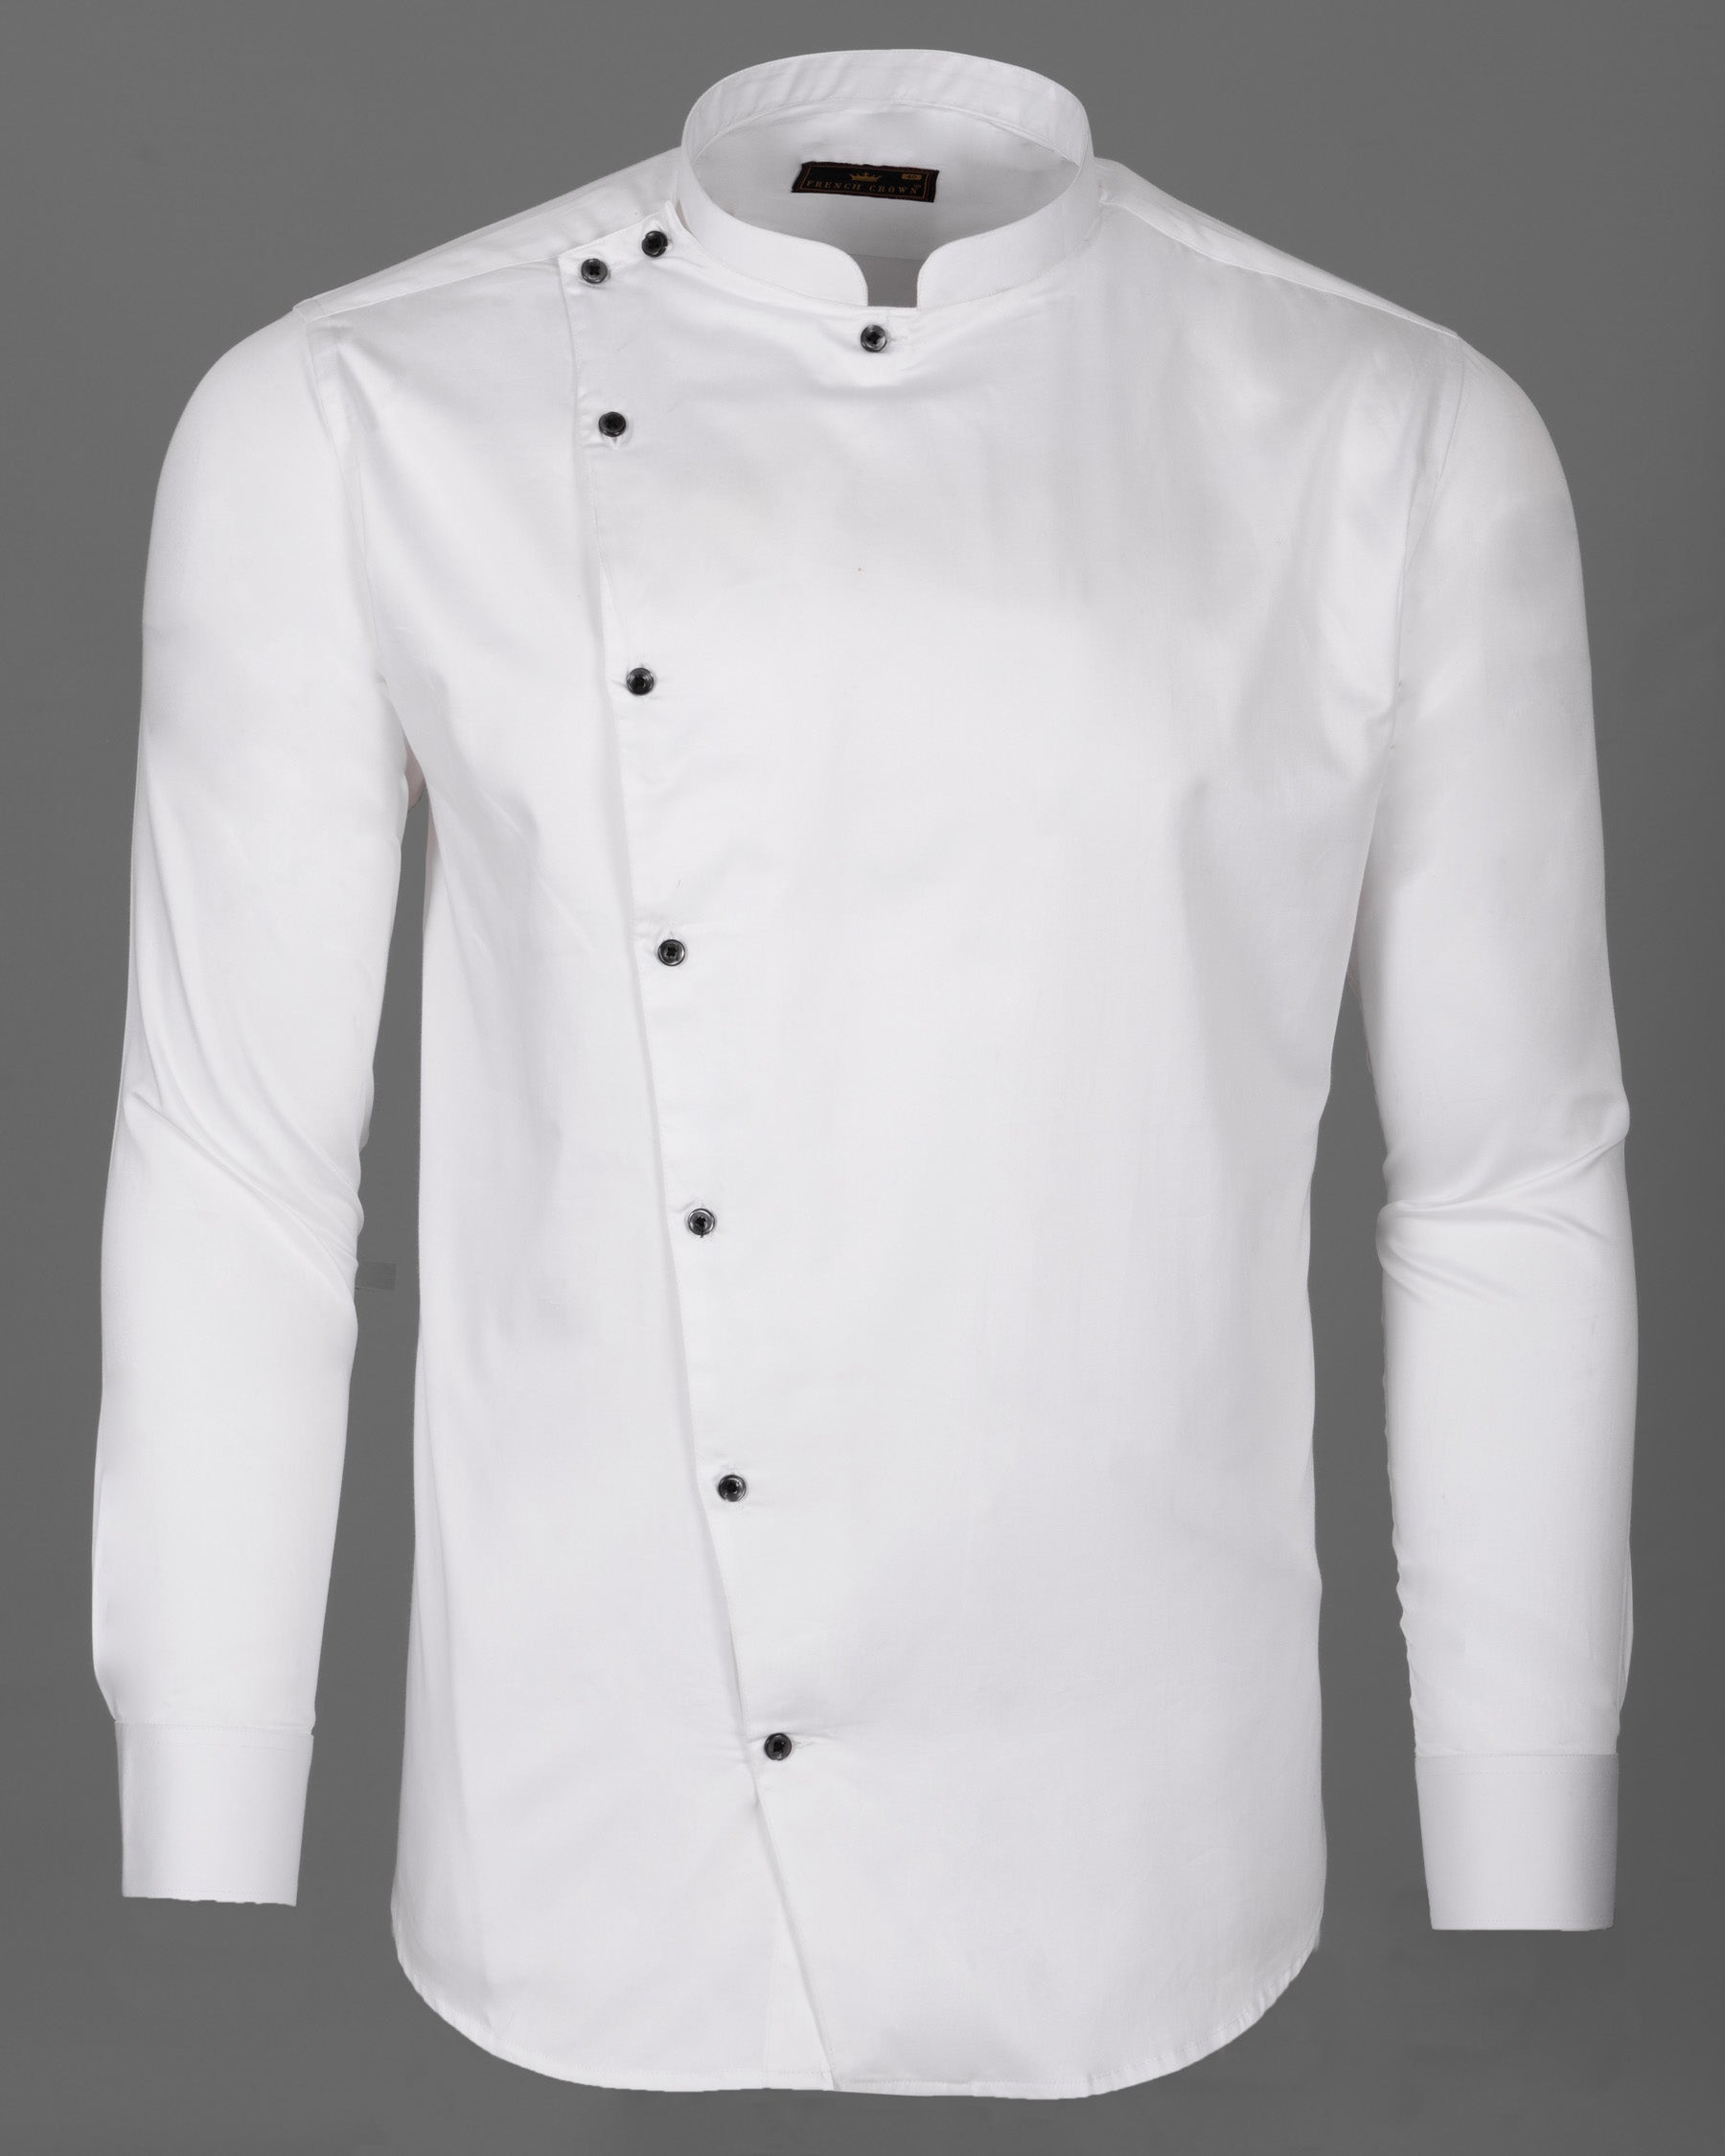 Bright White Subtle Sheen Cross Buttoned Bandhgala Super Soft Premium Cotton Shirt 5024-BLK-P58-38, 5024-BLK-P58-H-38, 5024-BLK-P58-39, 5024-BLK-P58-H-39, 5024-BLK-P58-40, 5024-BLK-P58-H-40, 5024-BLK-P58-42, 5024-BLK-P58-H-42, 5024-BLK-P58-44, 5024-BLK-P58-H-44, 5024-BLK-P58-46, 5024-BLK-P58-H-46, 5024-BLK-P58-48, 5024-BLK-P58-H-48, 5024-BLK-P58-50, 5024-BLK-P58-H-50, 5024-BLK-P58-52, 5024-BLK-P58-H-52